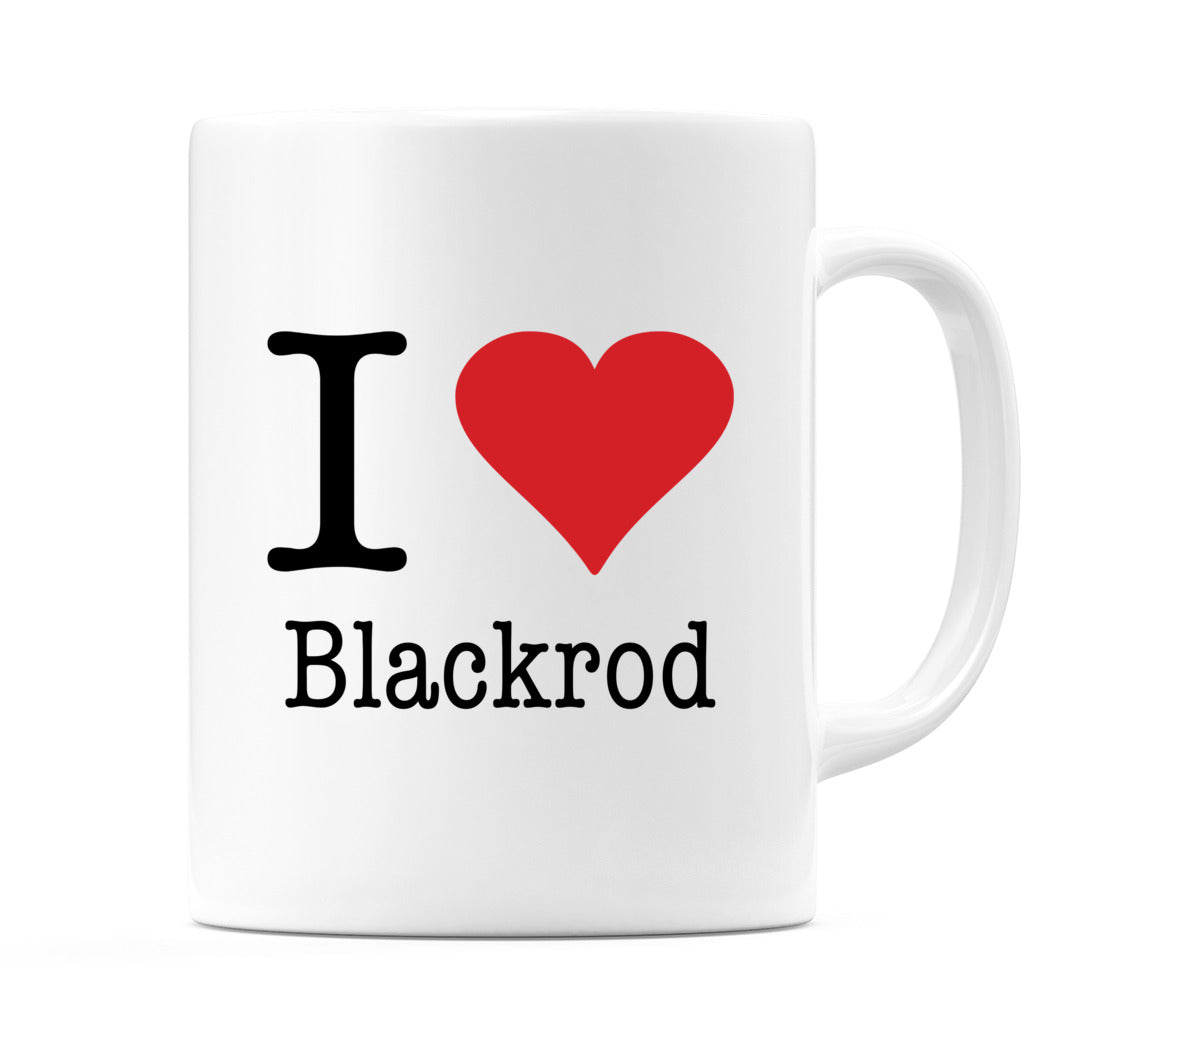 I Love Blackrod Mug